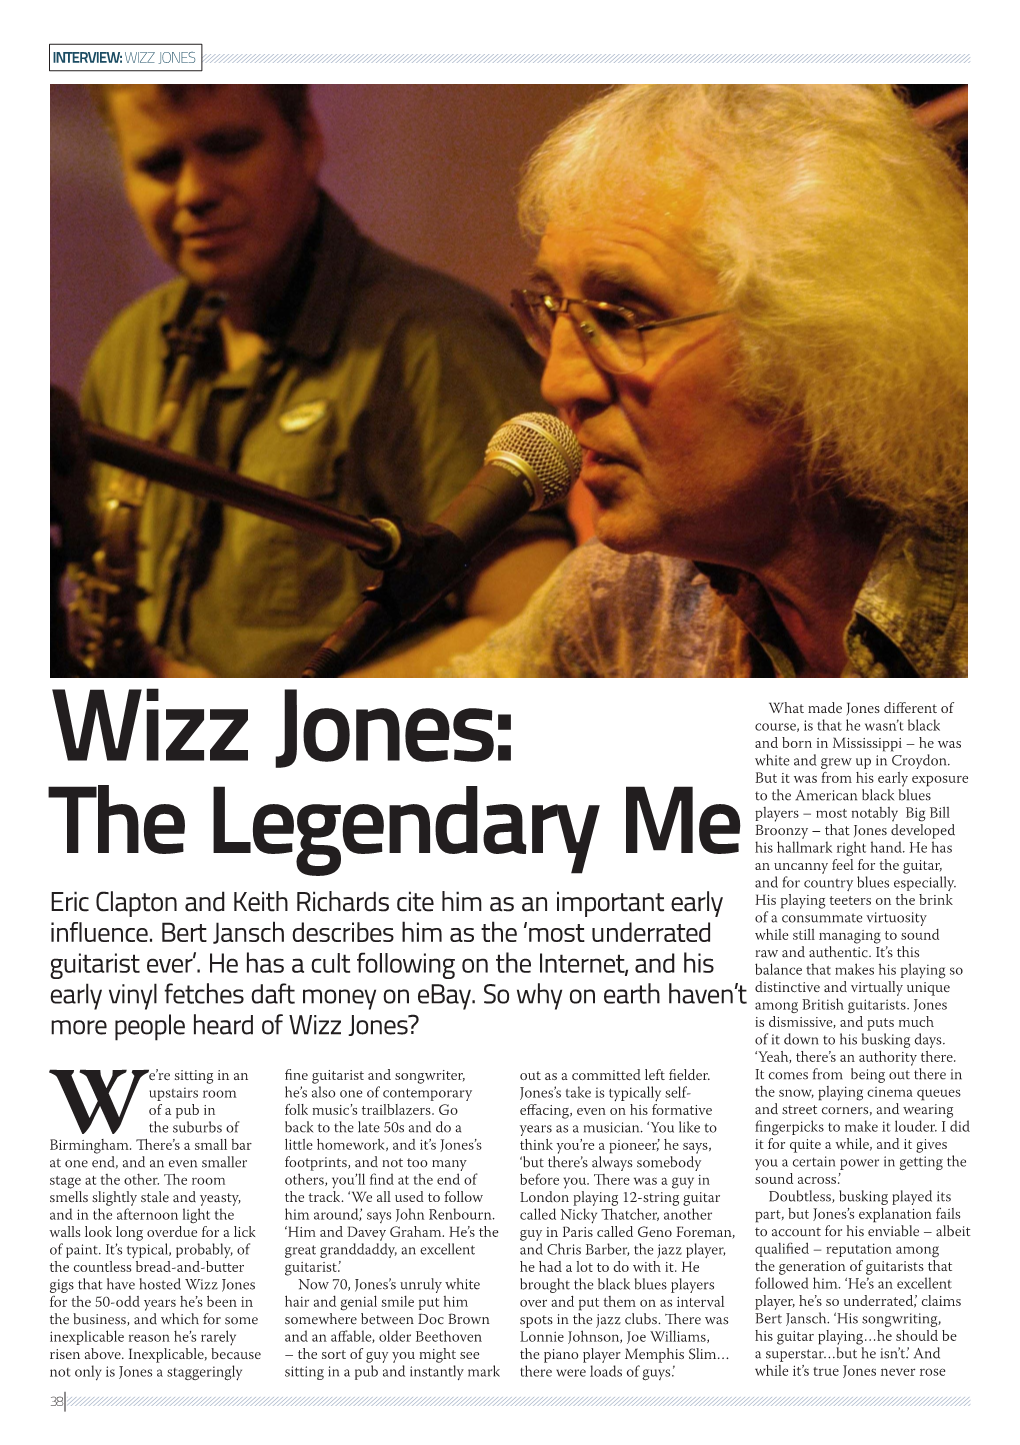 Wizz Jones: White and Grew up in Croydon